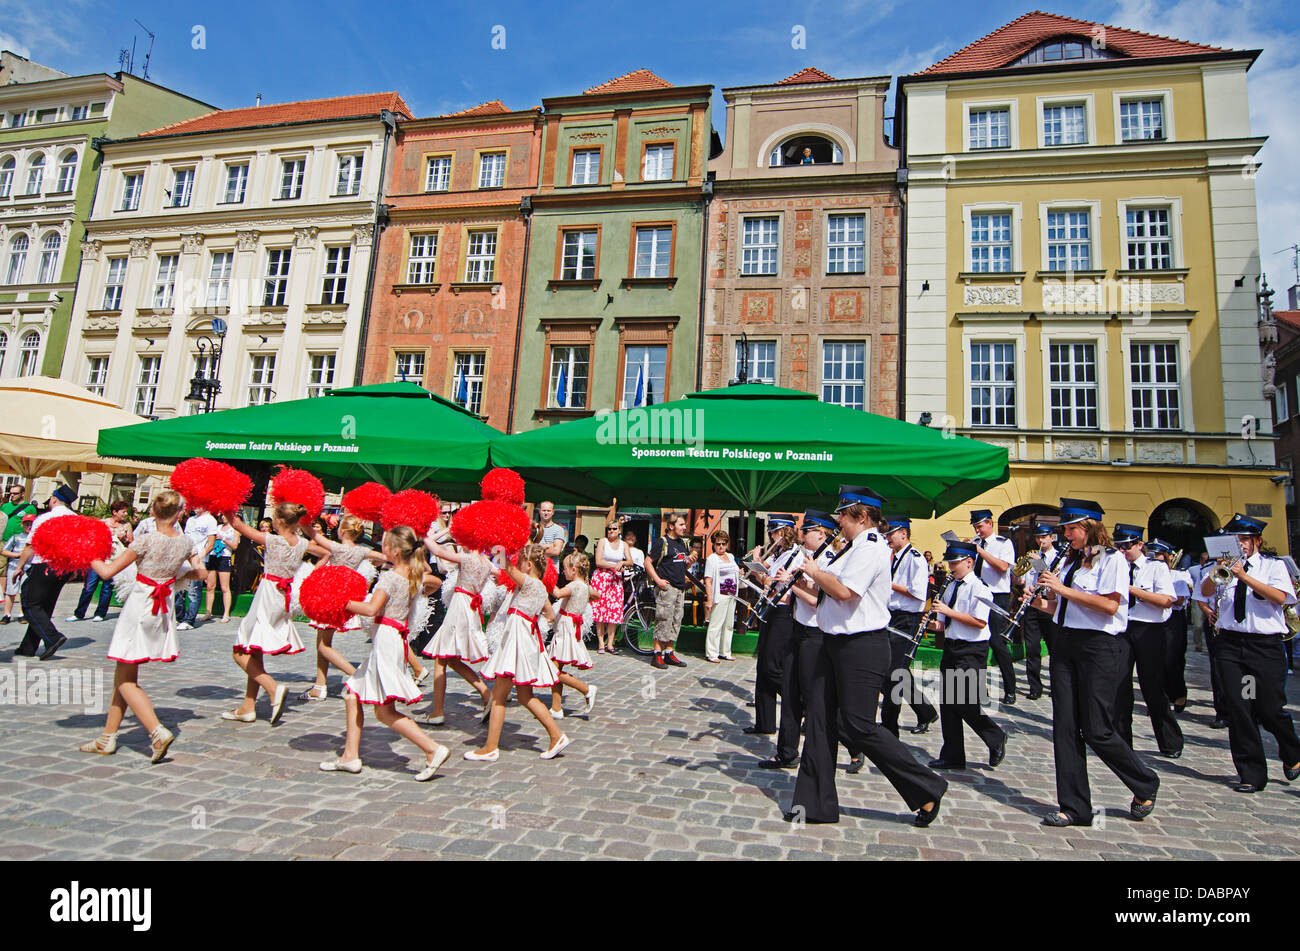 Quadratisch, historische Altstadt, Poznan, Polen, Europa-Markt Stockfoto